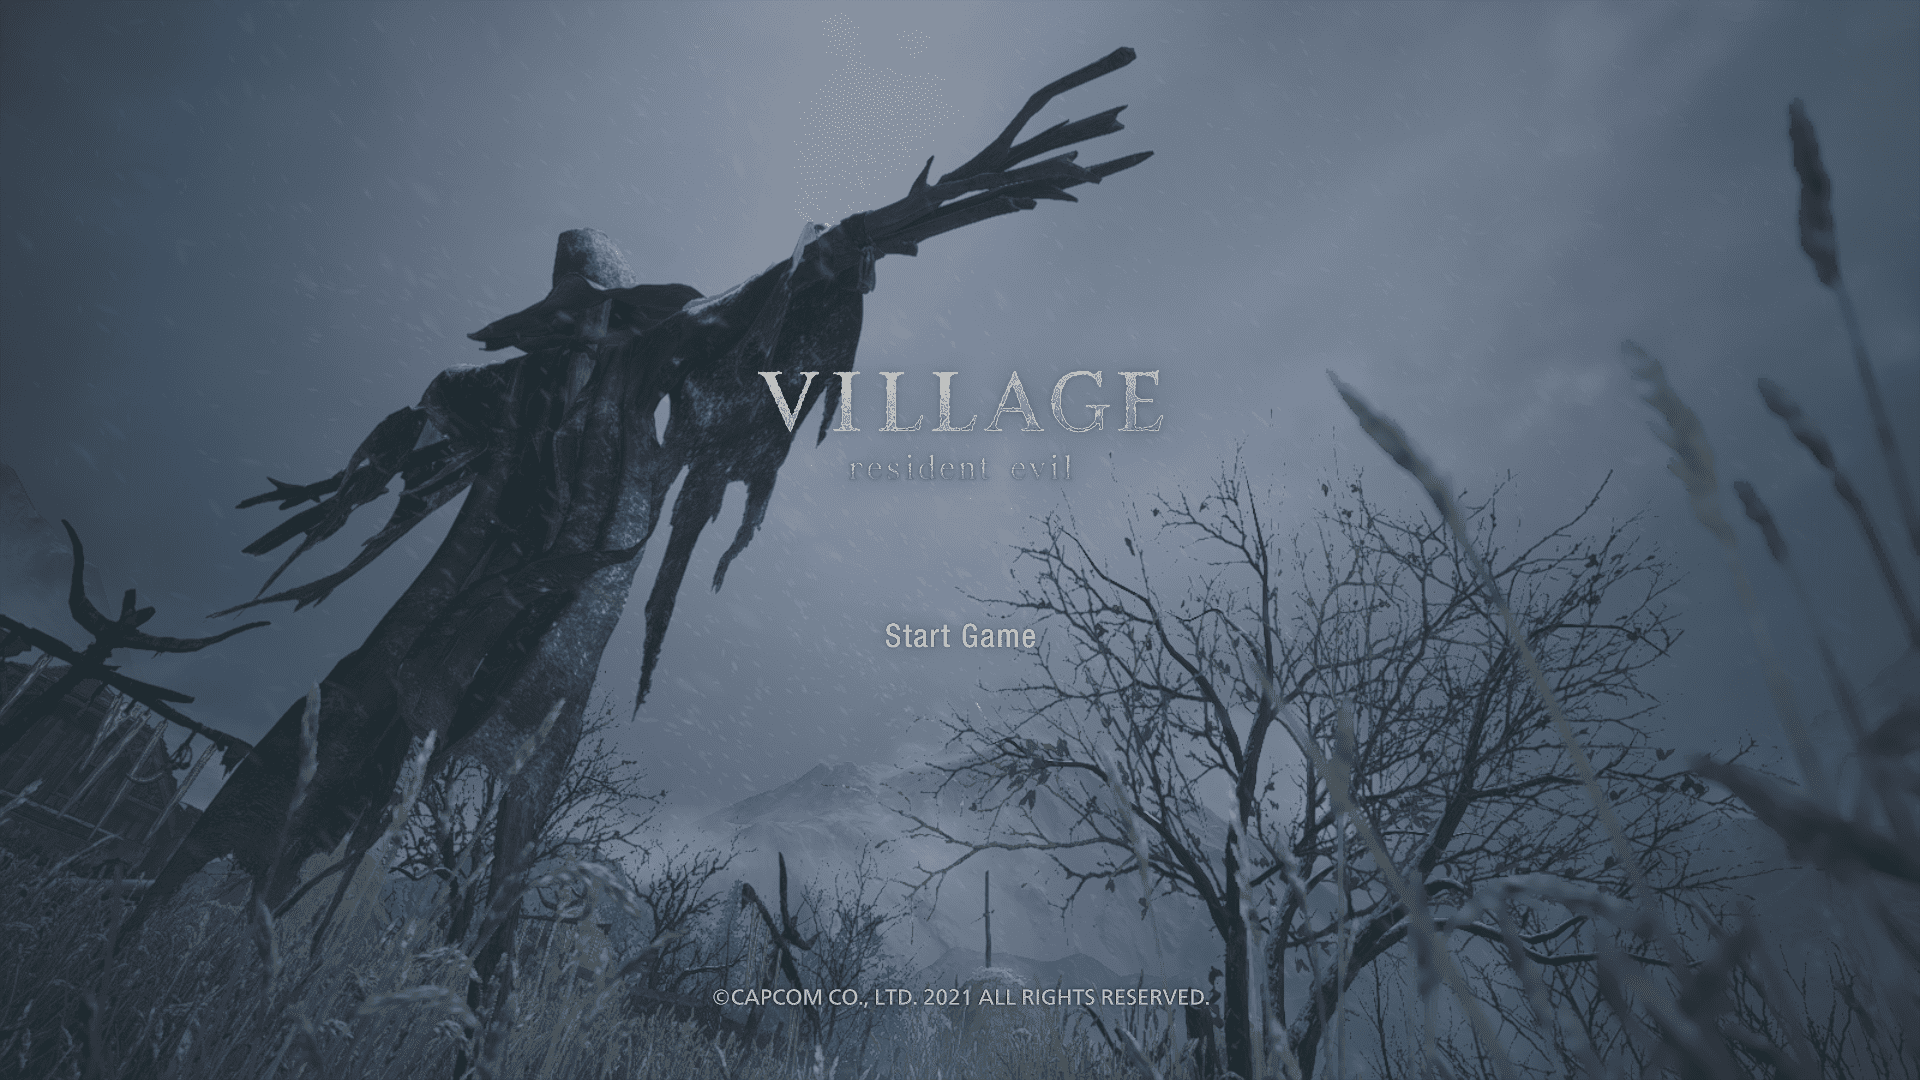 Badania, testy, genetyczne modyfikacje i całkiem straszna wioska. ,,Resident Evil: Village” – recenzja gry